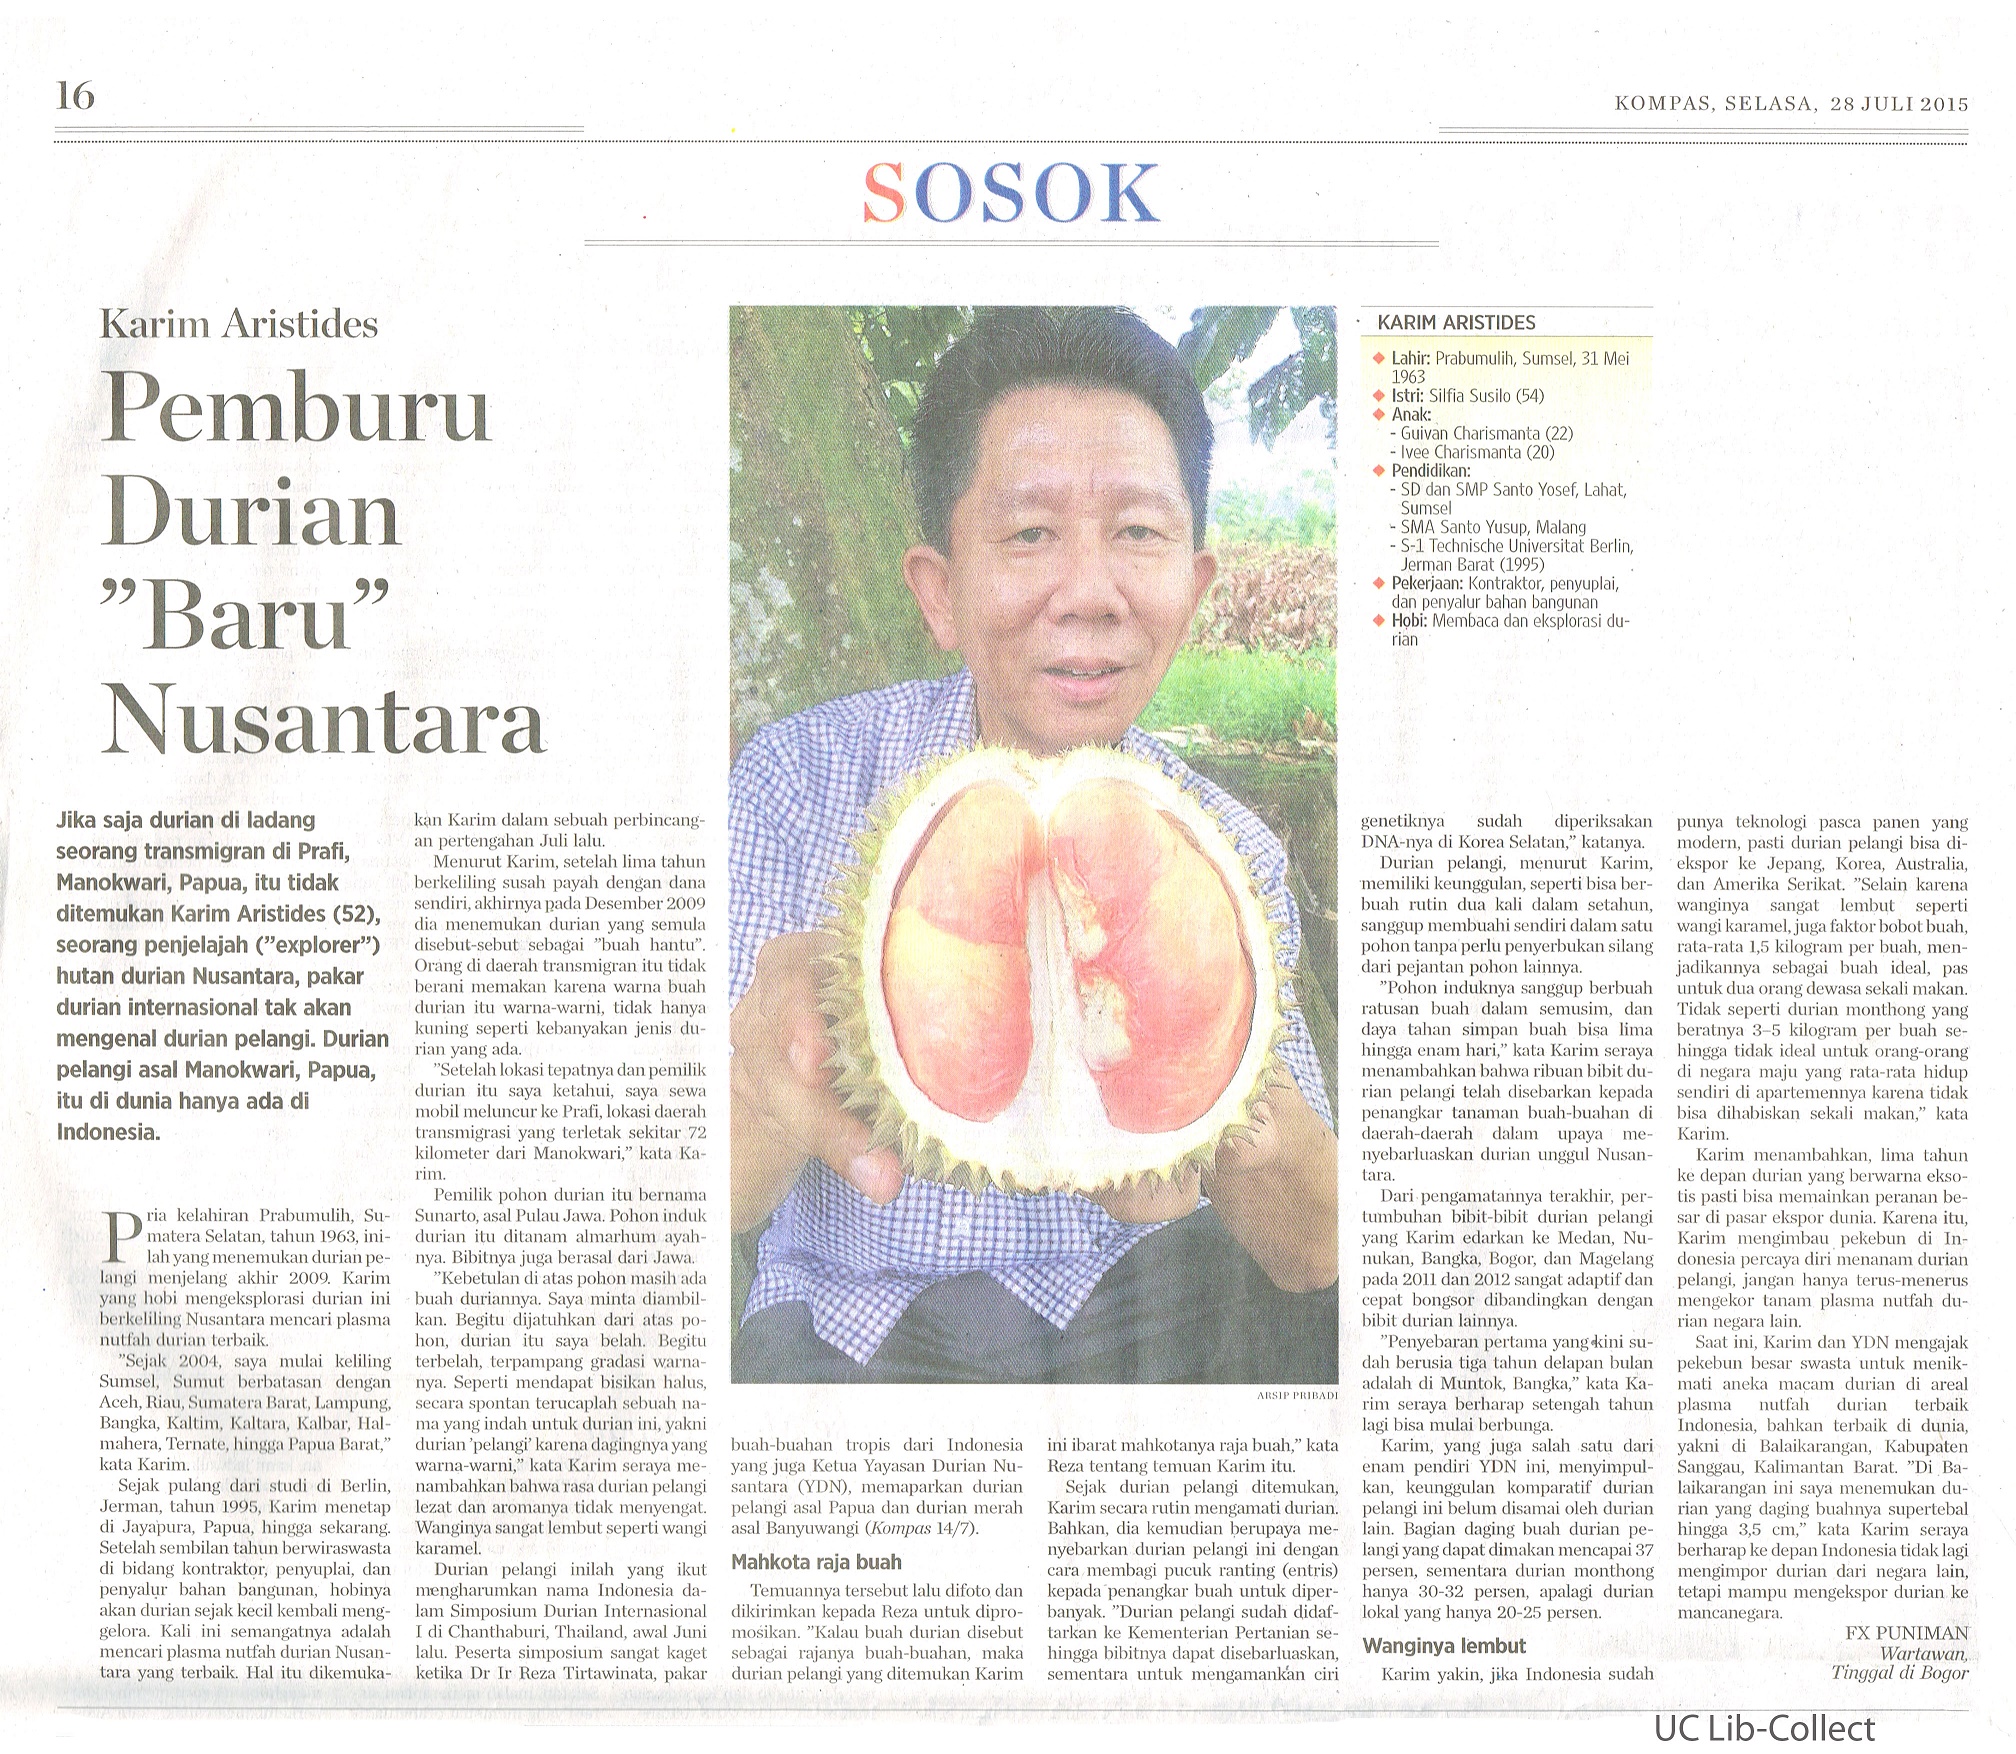 Pemburu Durian Baru Nusantara. Kompas. 28 Juli 2015.Hal.16